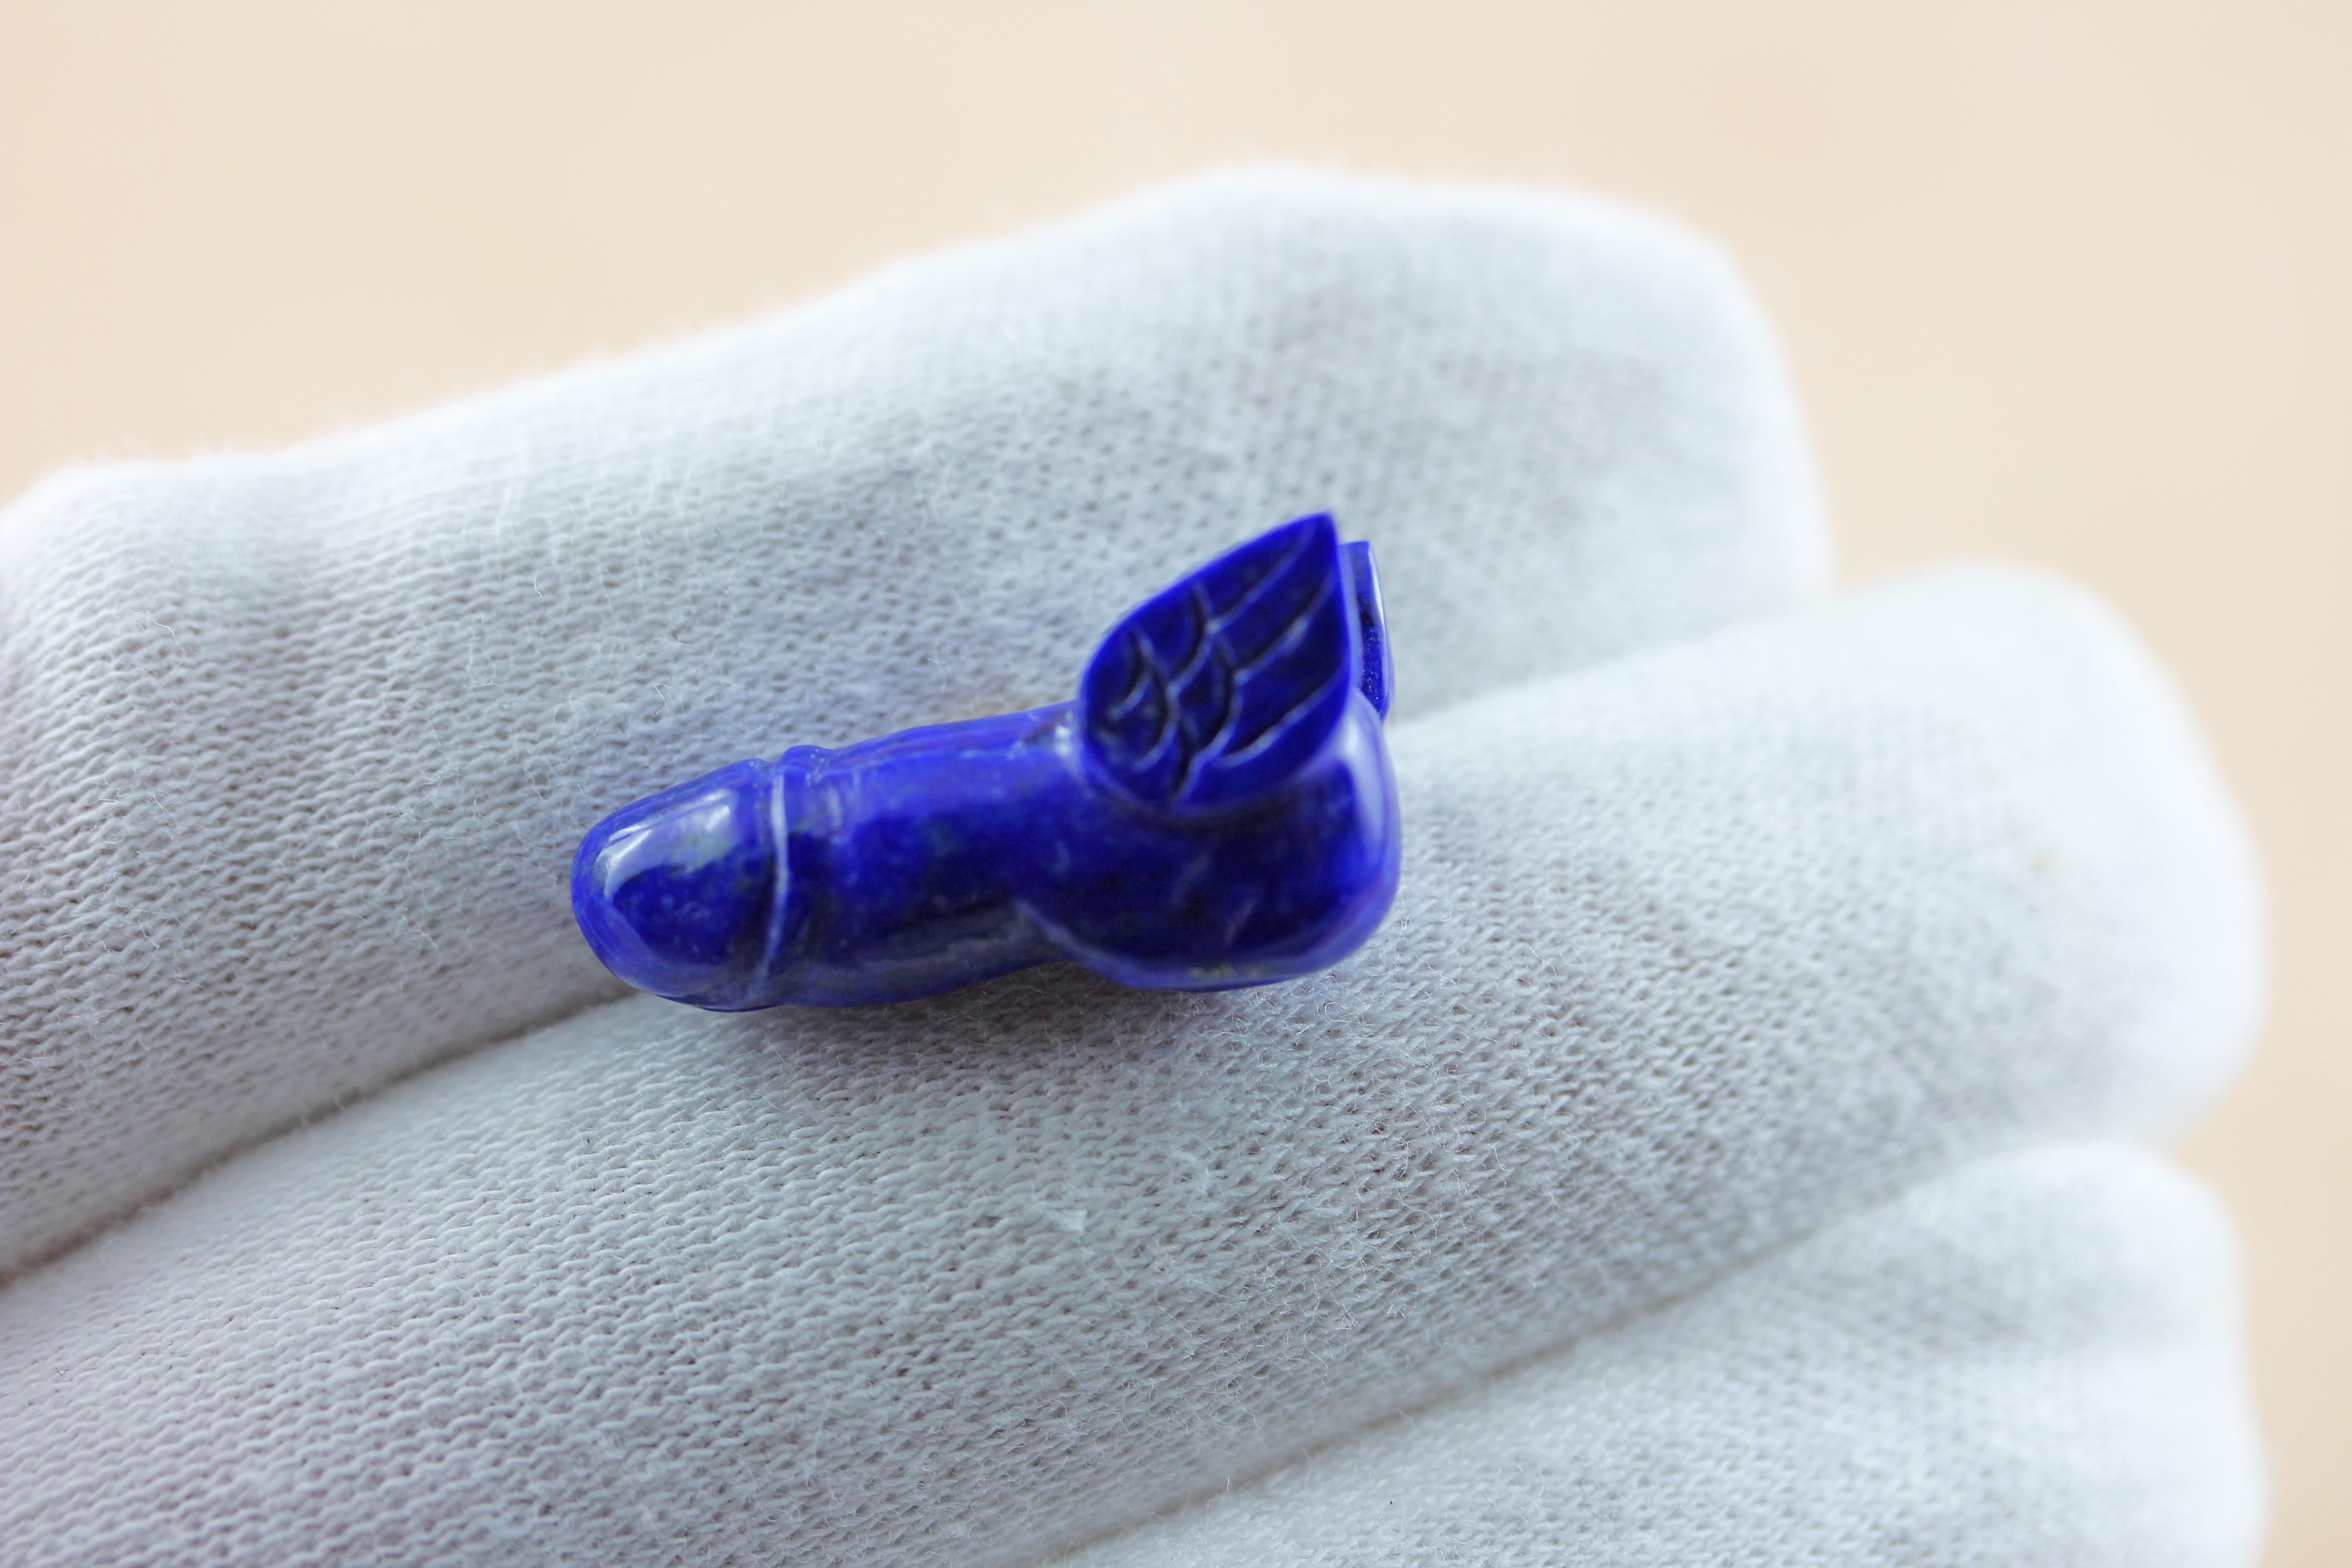 Cette paire de boutons de manchette ludique est entièrement réalisée en lapis-lazuli. 
L'anneau est un simple hexagone allongé avec une tige en or jaune 18k, tandis que le protagoniste de la pièce a la forme d'un phallus accessoirisé de manière